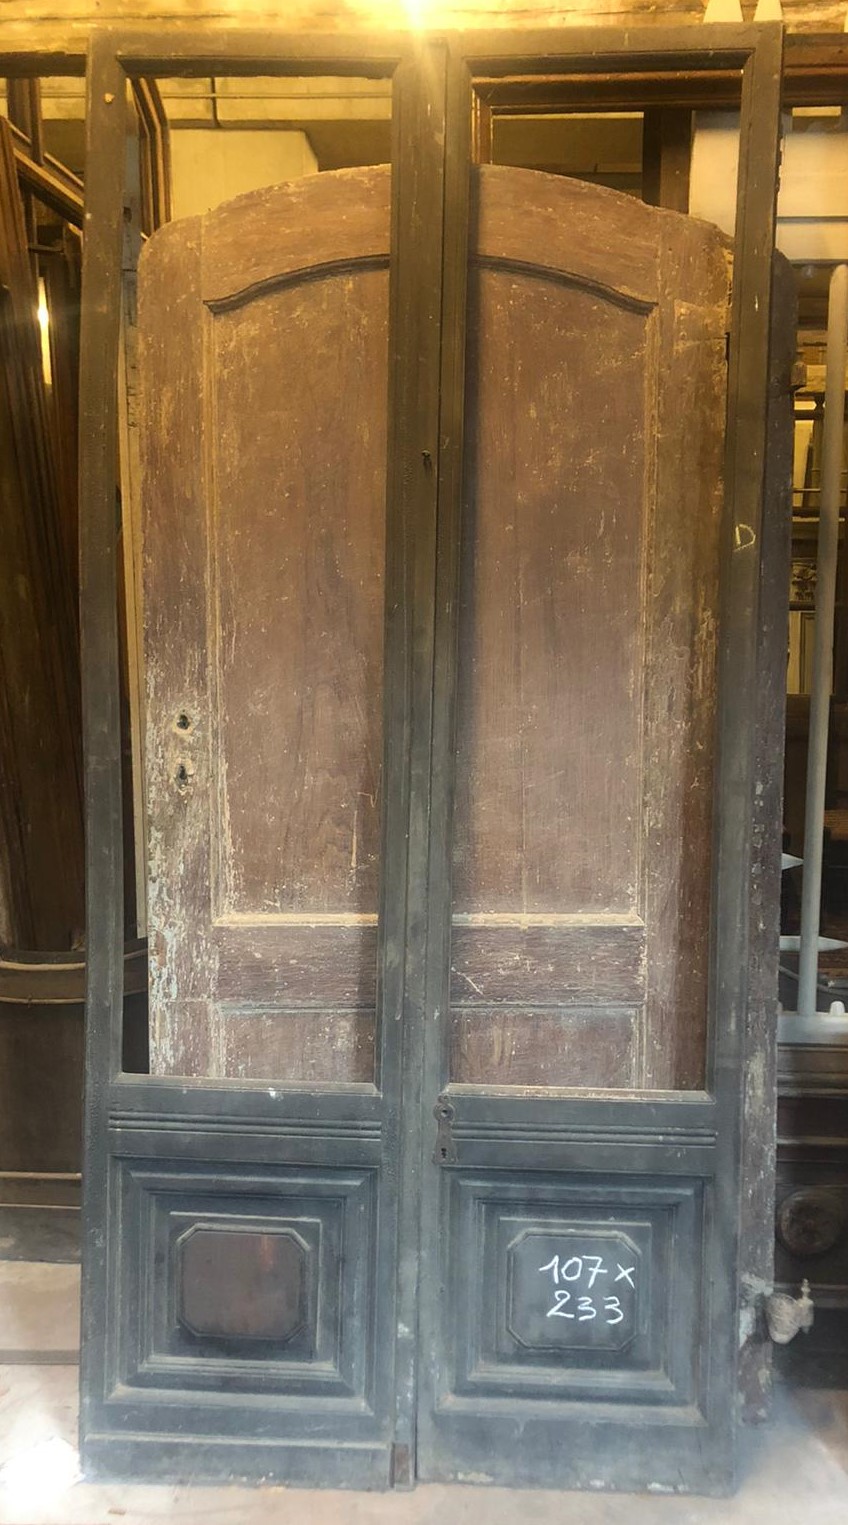 neg052 - shop door, 18th century, cm W 107 x H 233